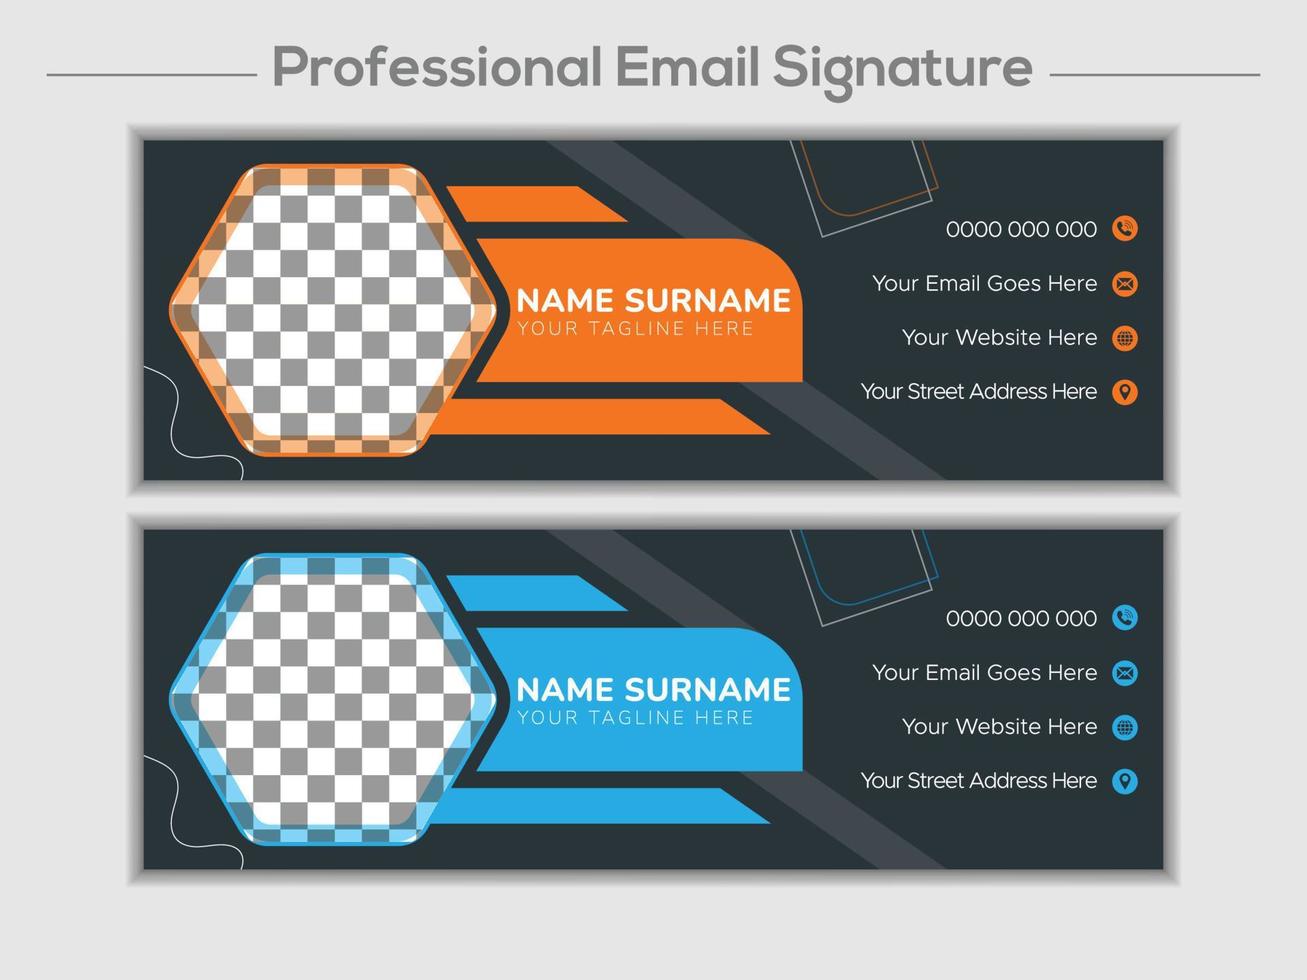 kreative E-Mail-Signatur oder E-Mail-Fußzeile und persönliches Cover-Design für soziale Medien vektor